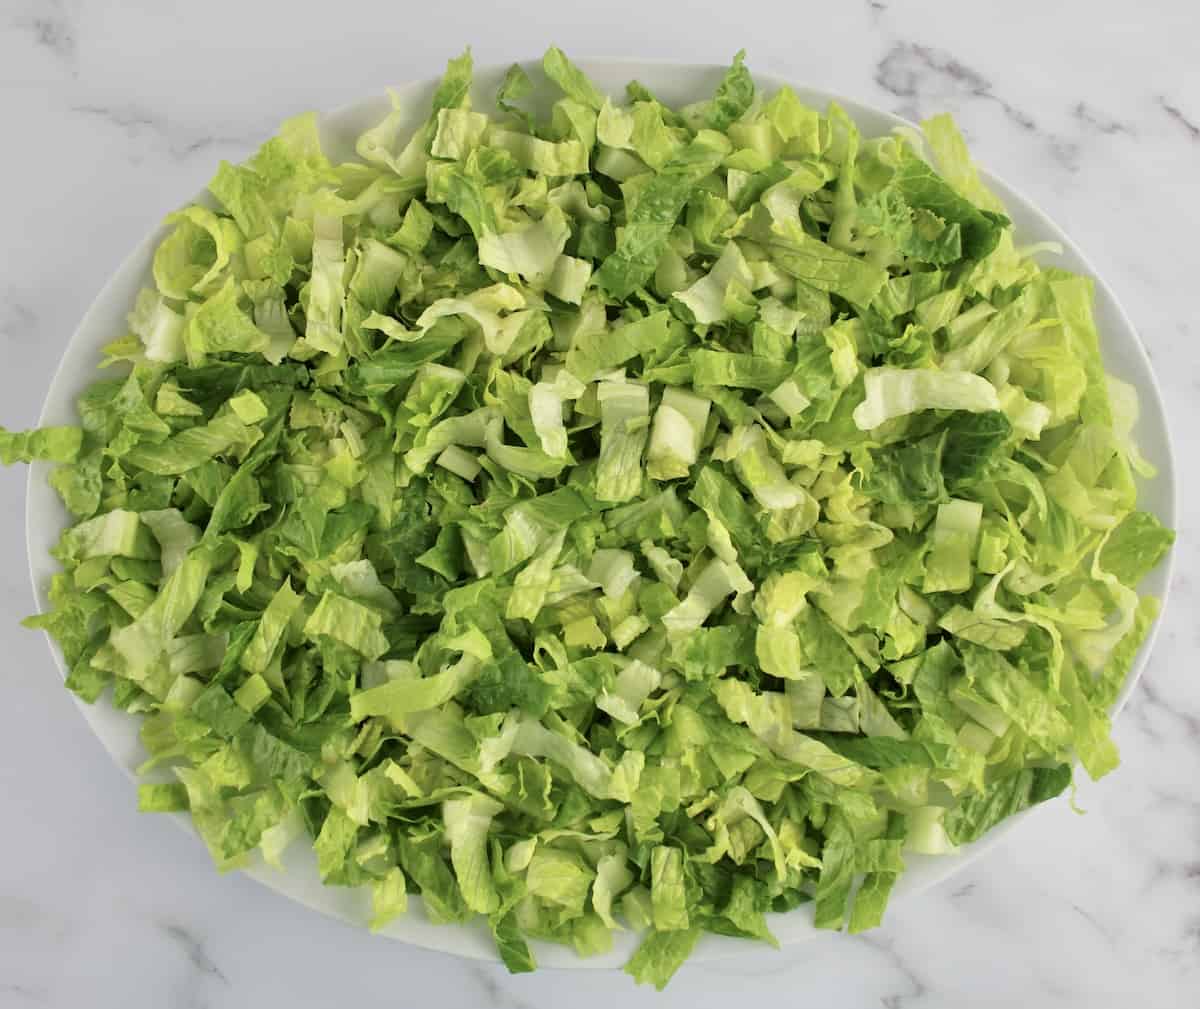 shredded romaine lettuce on platter